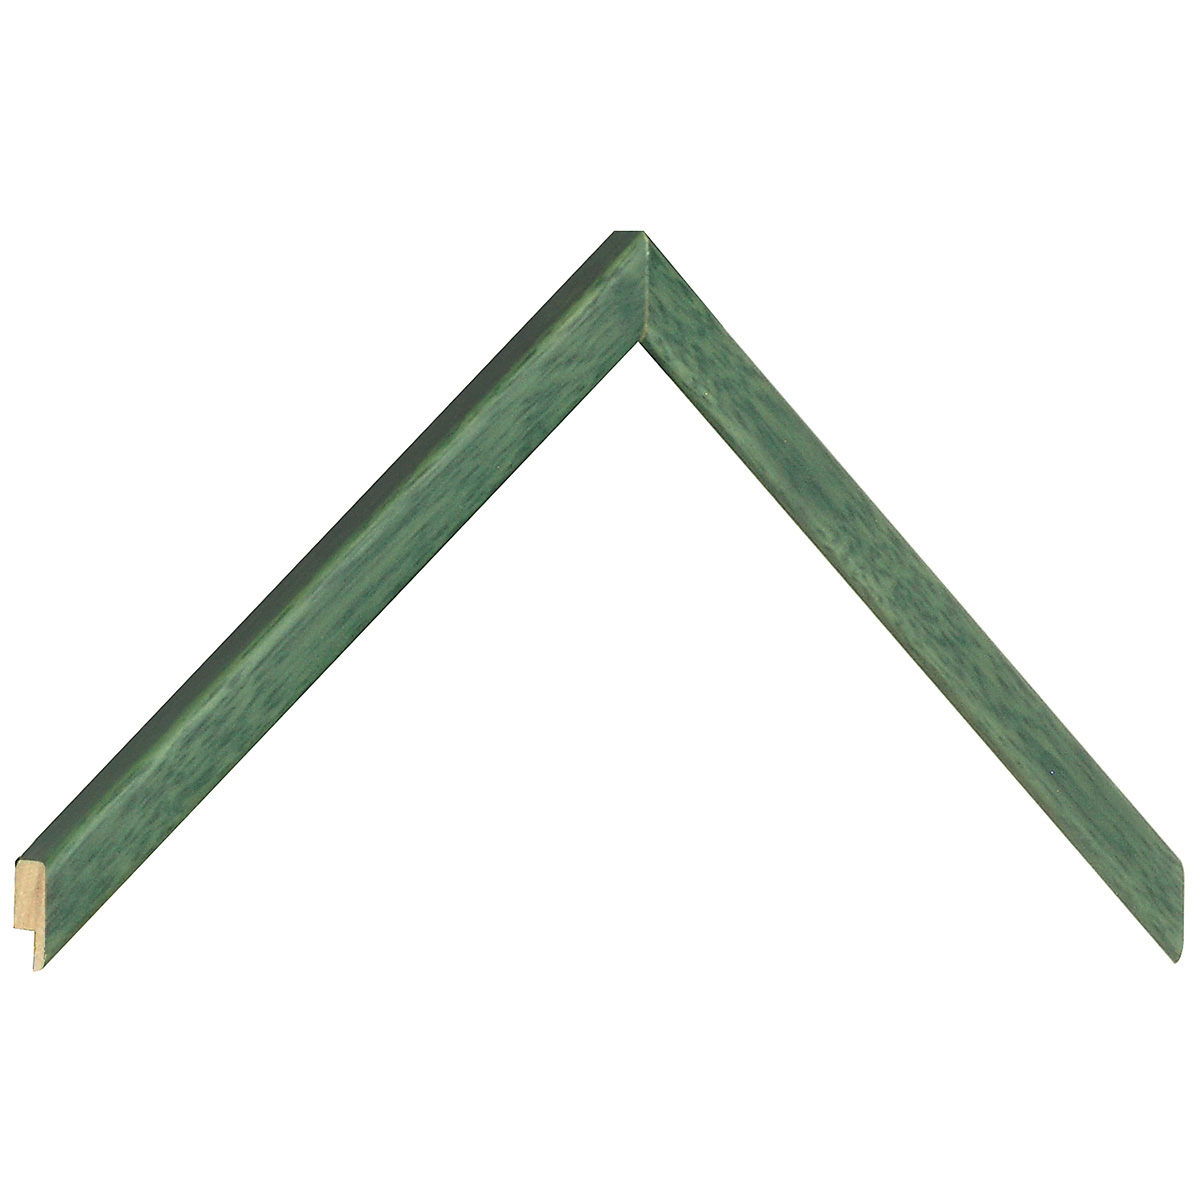 Bilderleiste Lindenholz  Breite 14 mm mattes Finish grün - Musterwinkel